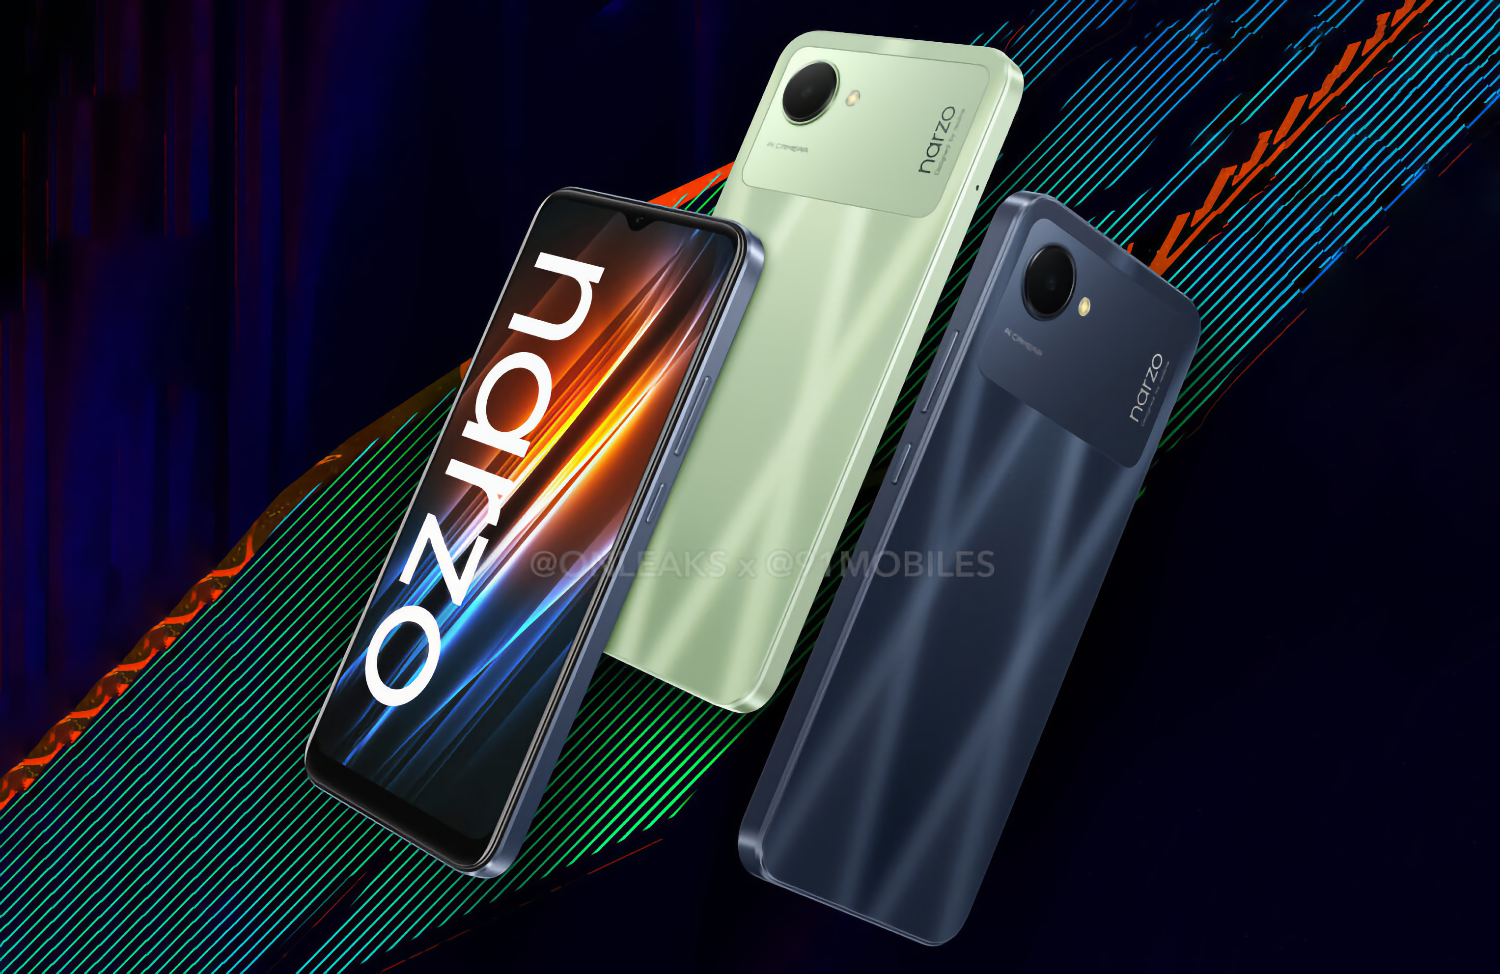 Realme представит новый сверхбюджетный смартфон Narzo 50i Prime дешевле 100 долларов уже в июне